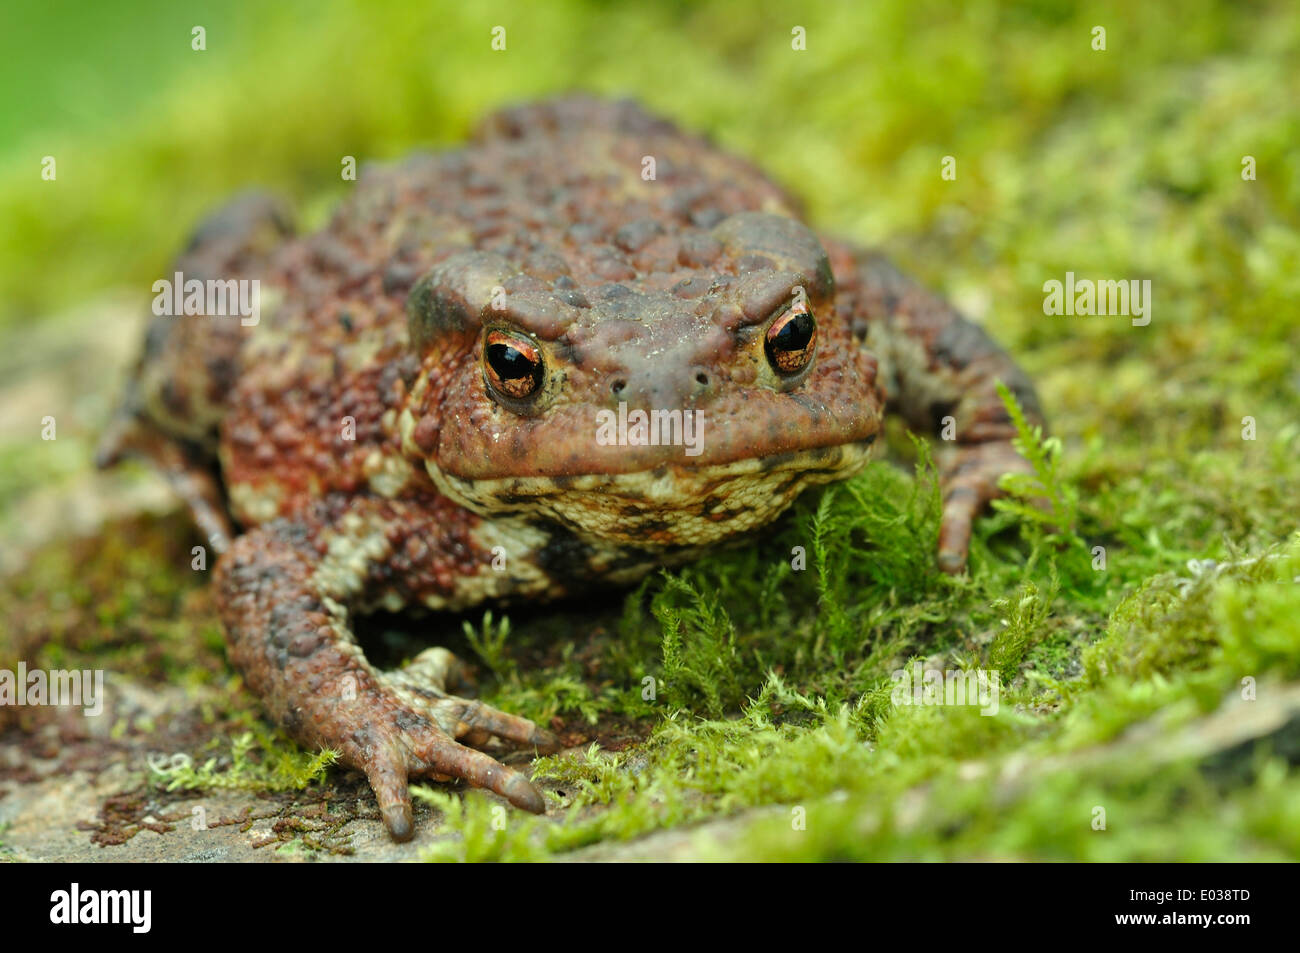 Common toad. Dorset, UK Stock Photo